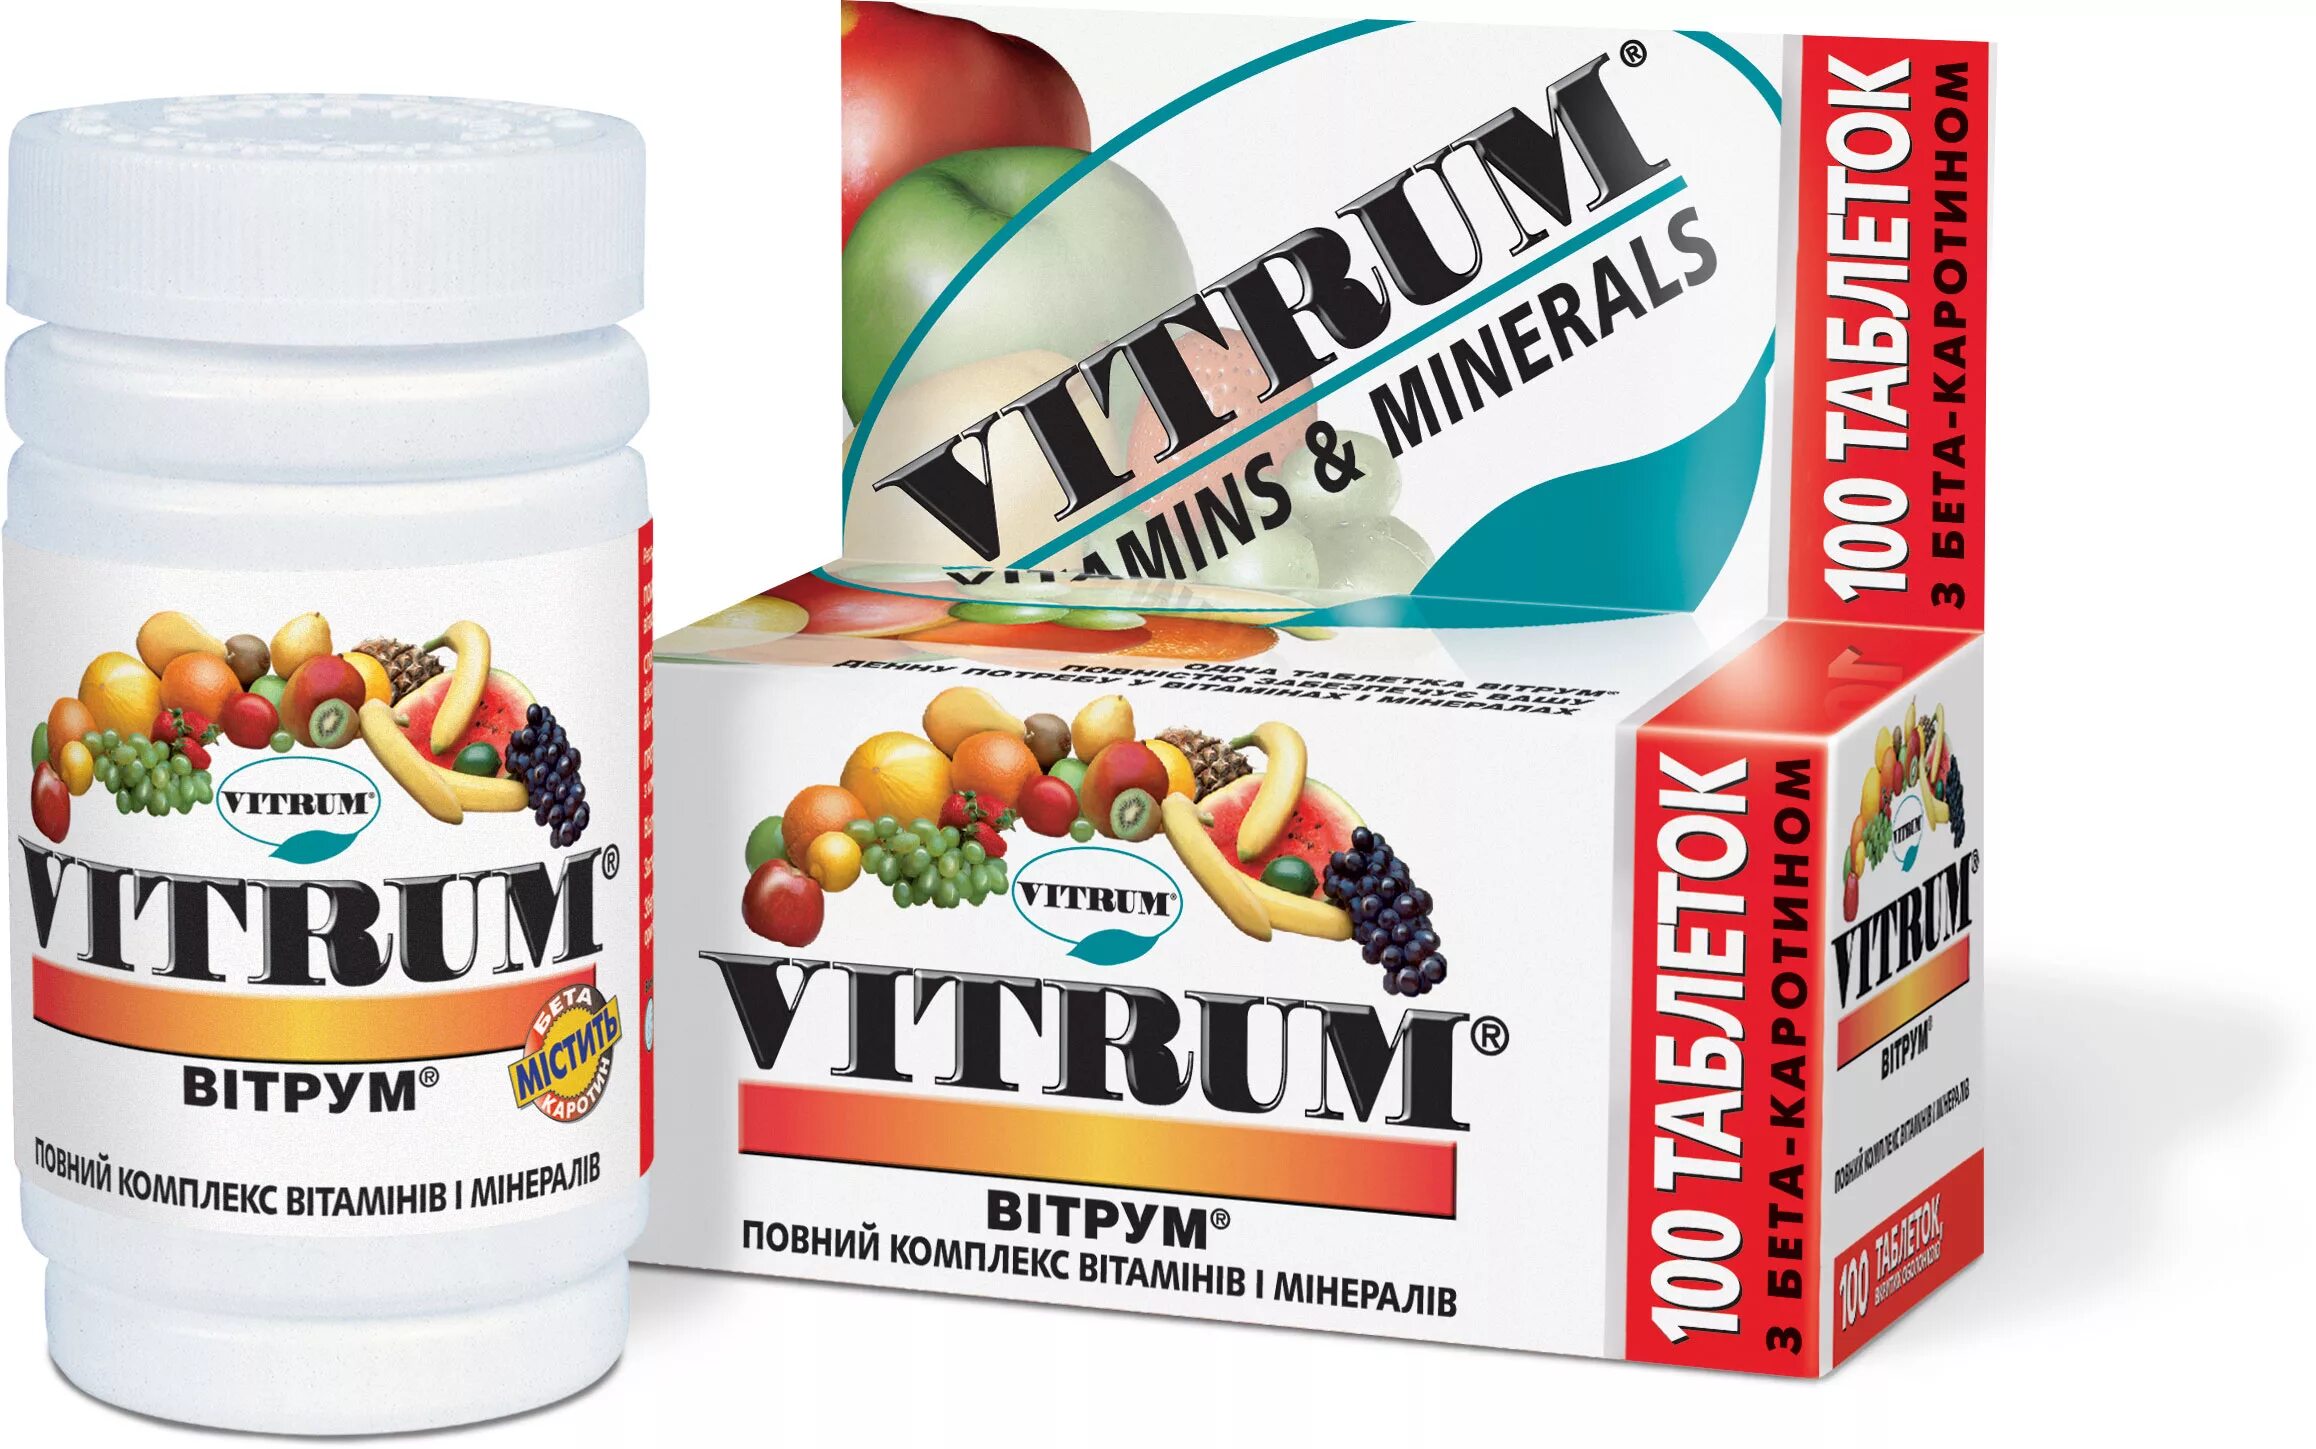 Витрум б6. Витамины Unipharm витрум. Комплекс витаминов Vitrum. Витрум Мульти комплекс. Витрум Центрум плюс.